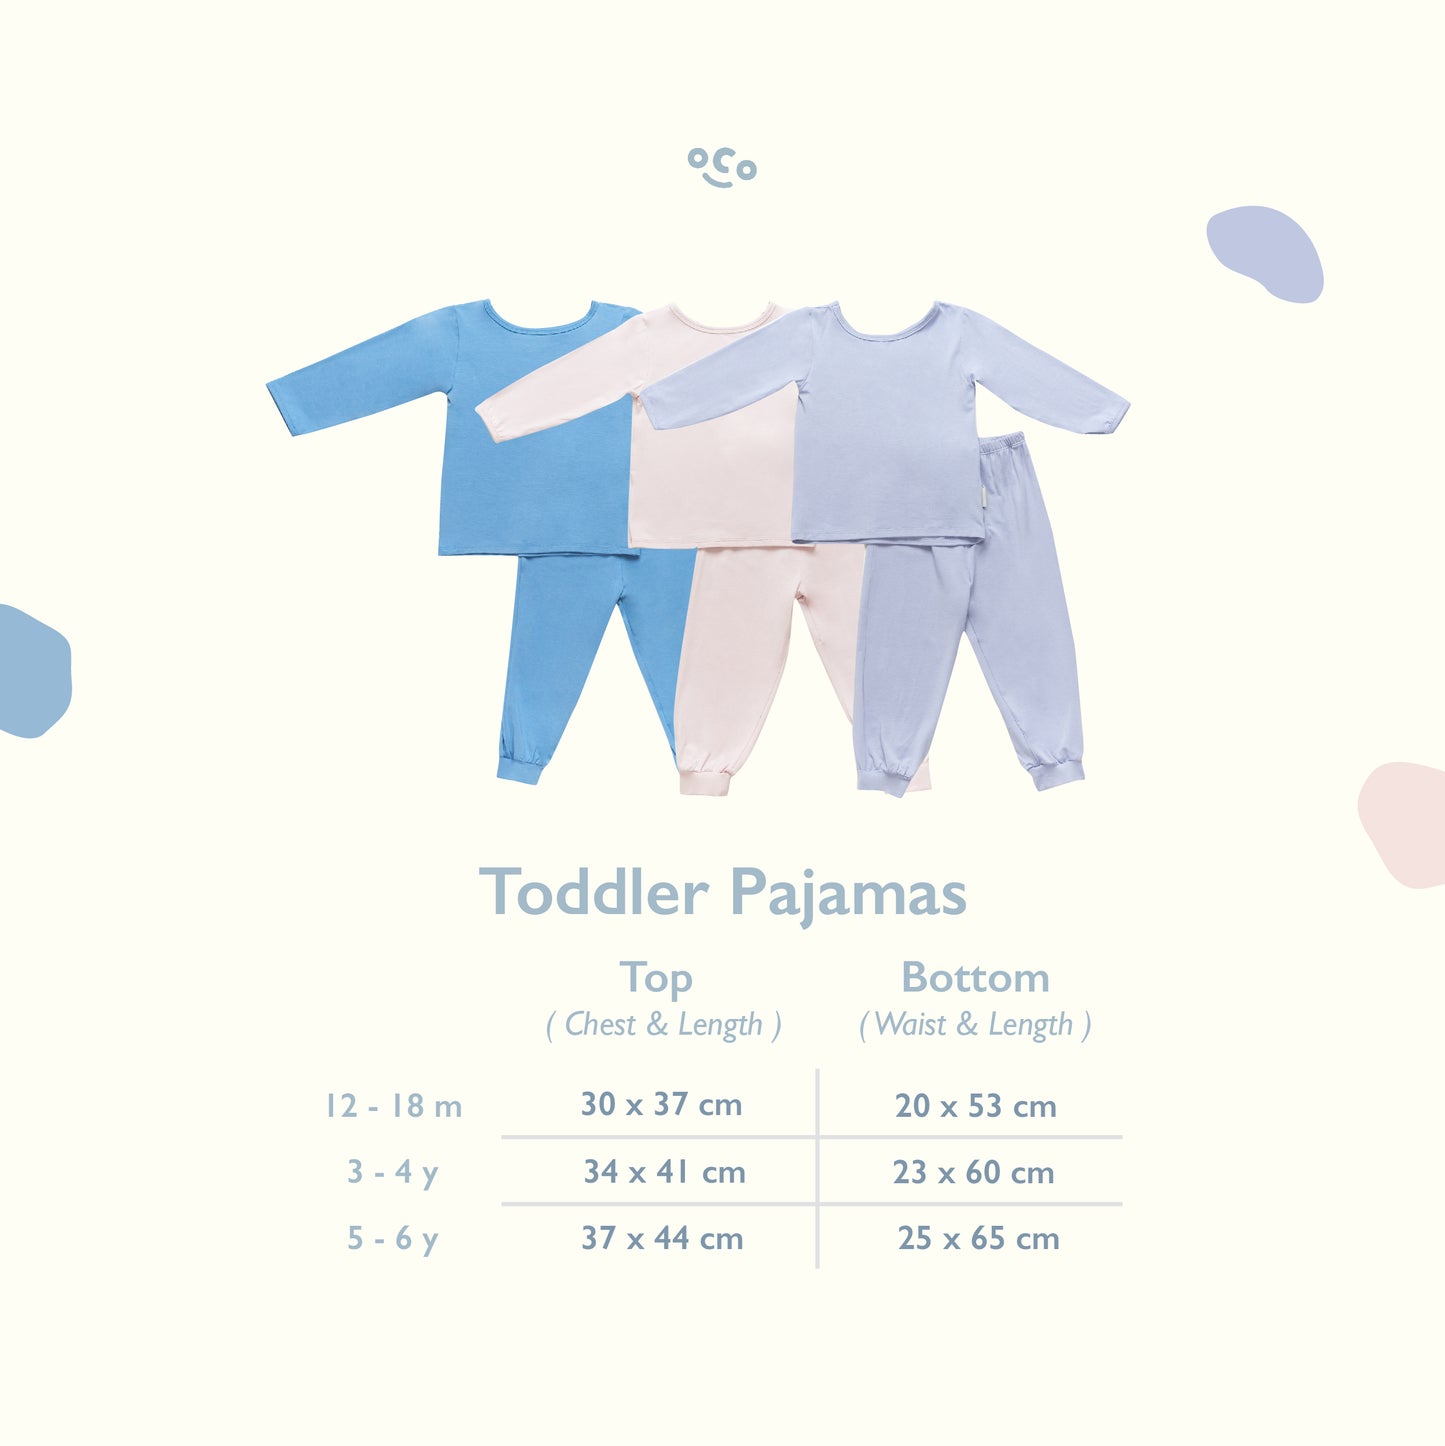 Tricolor Toddler Pajamas